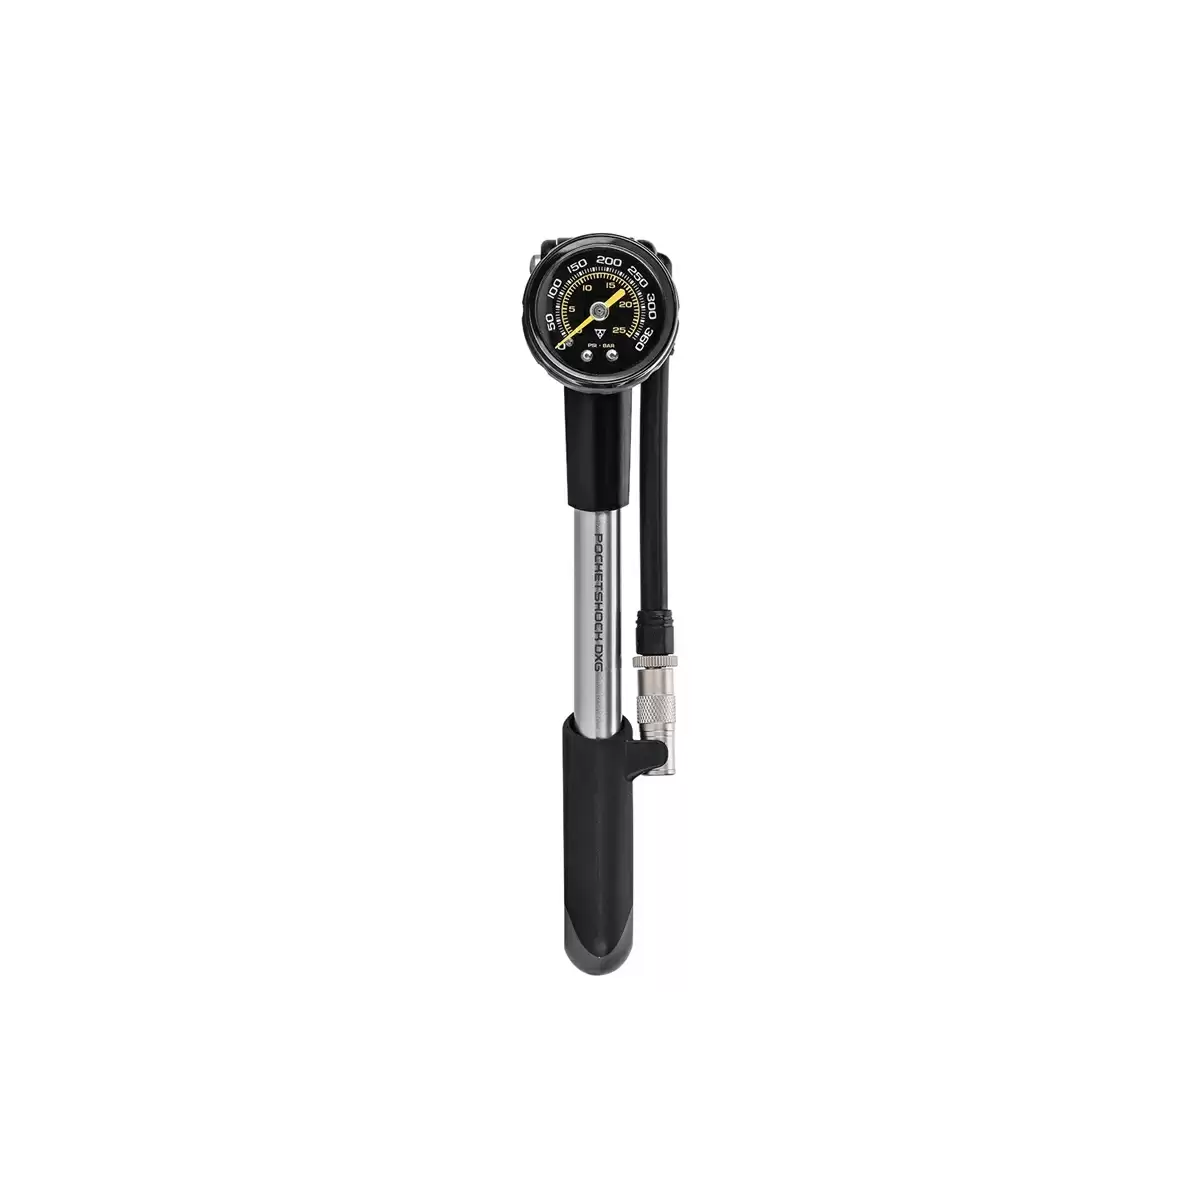 Pompa per Ammortizzatori PocketShock DXG Valvola Pressure-Rite 25bar / 360psi - image